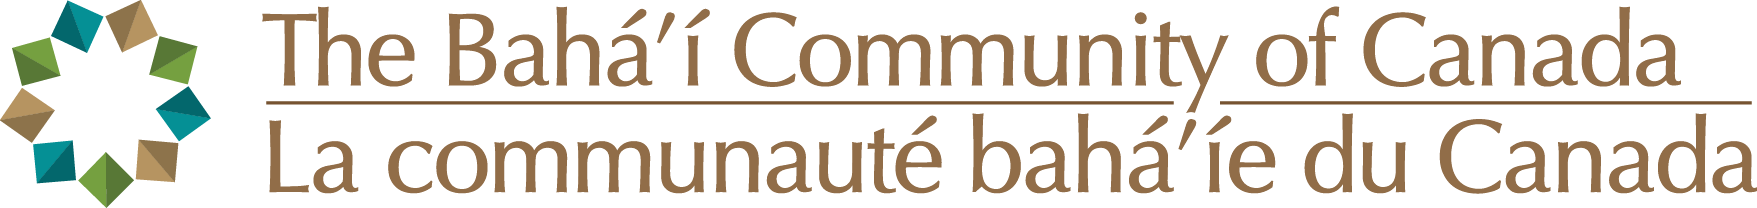 Bahá’í Community of Canada